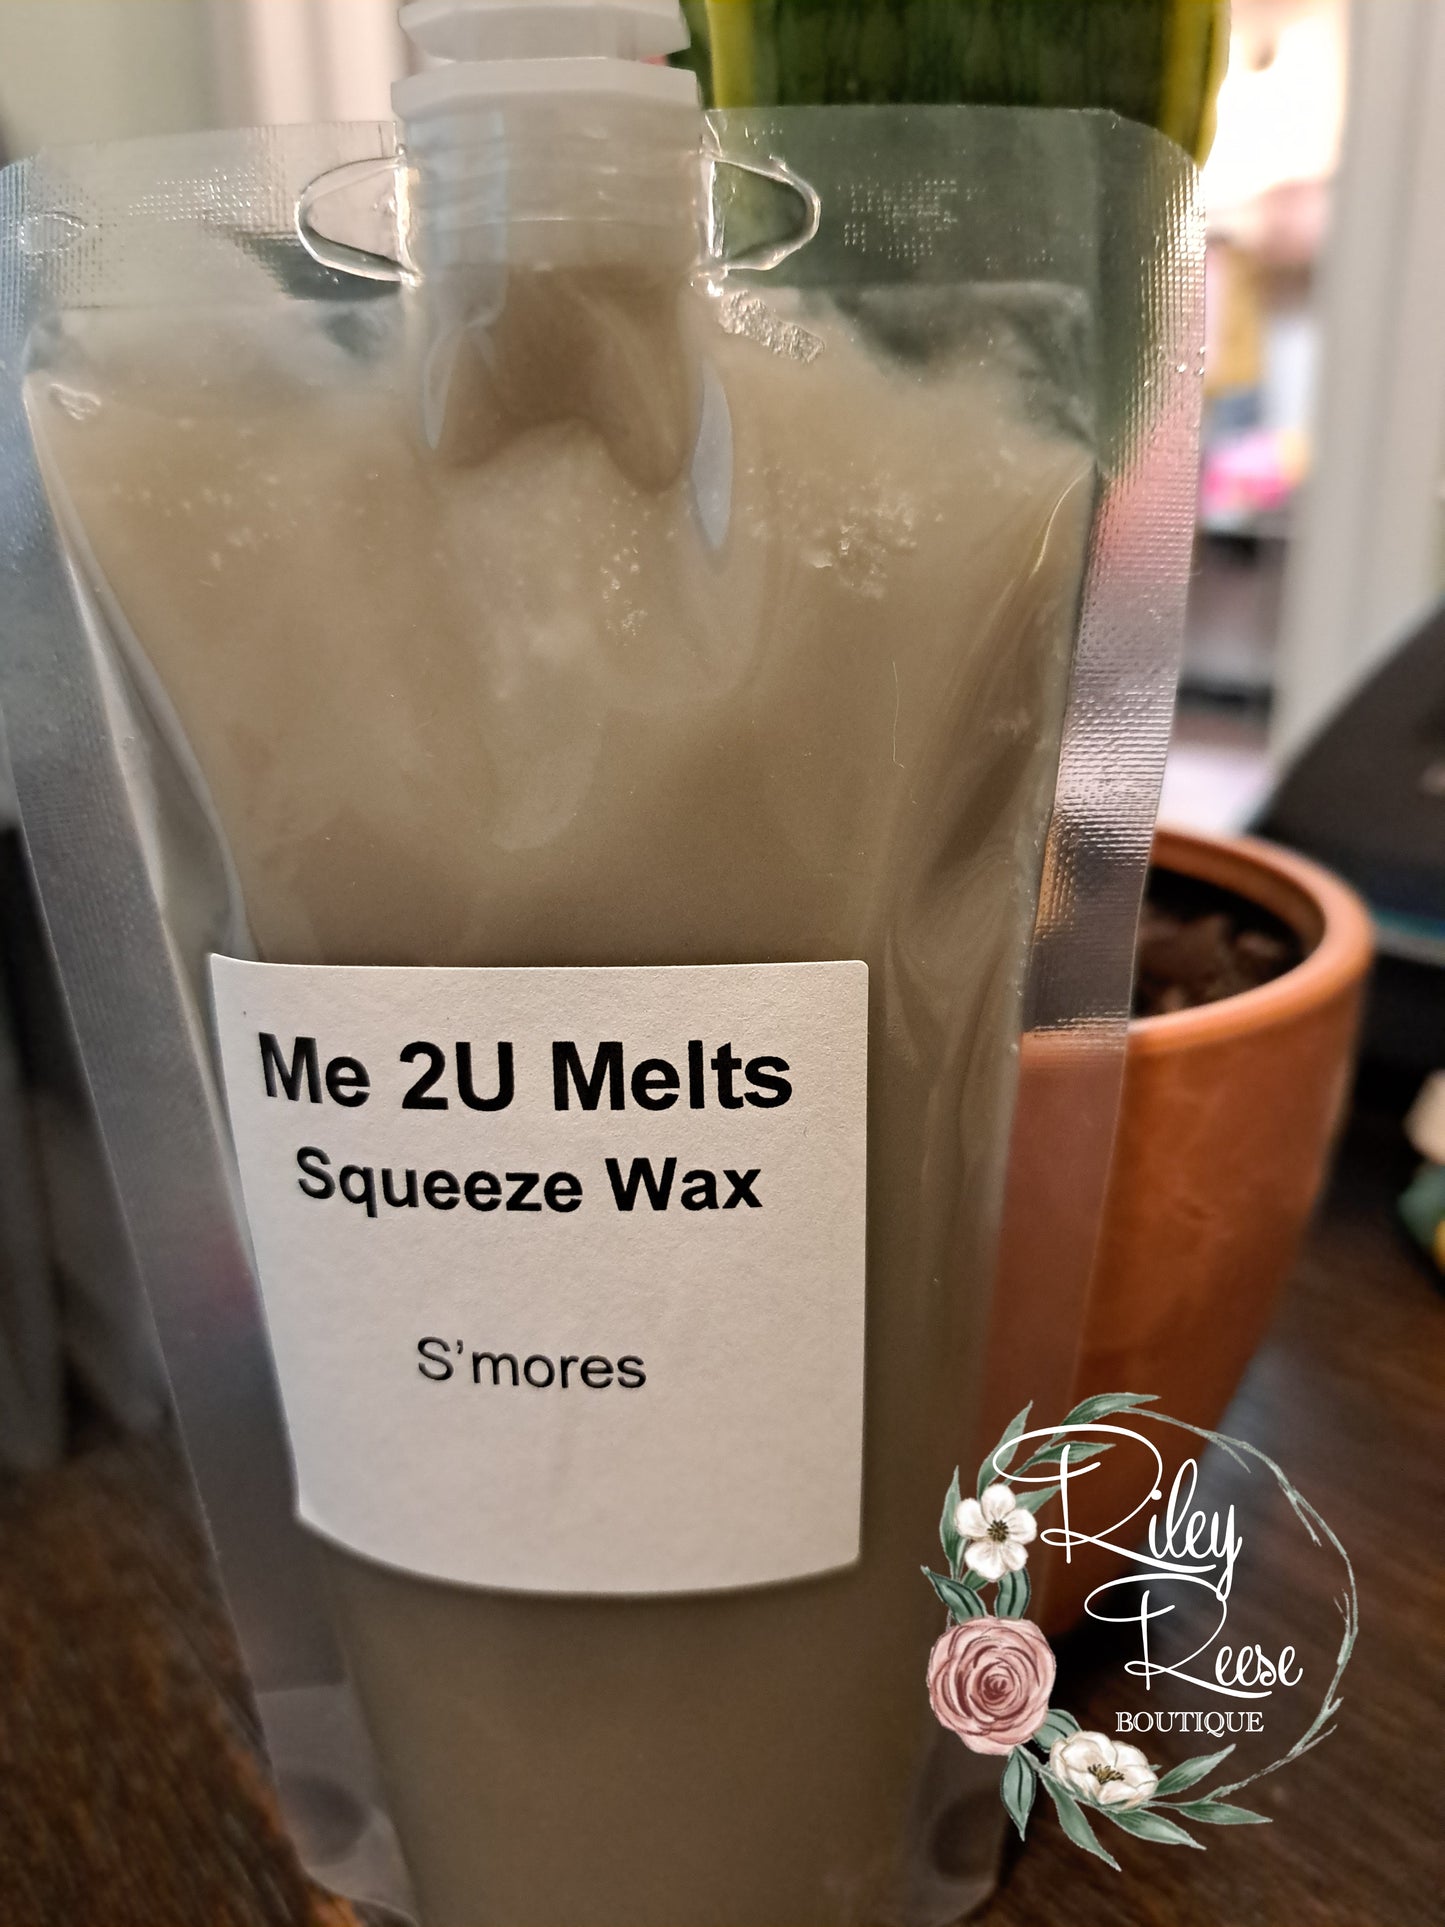 S'mores Liquid Max